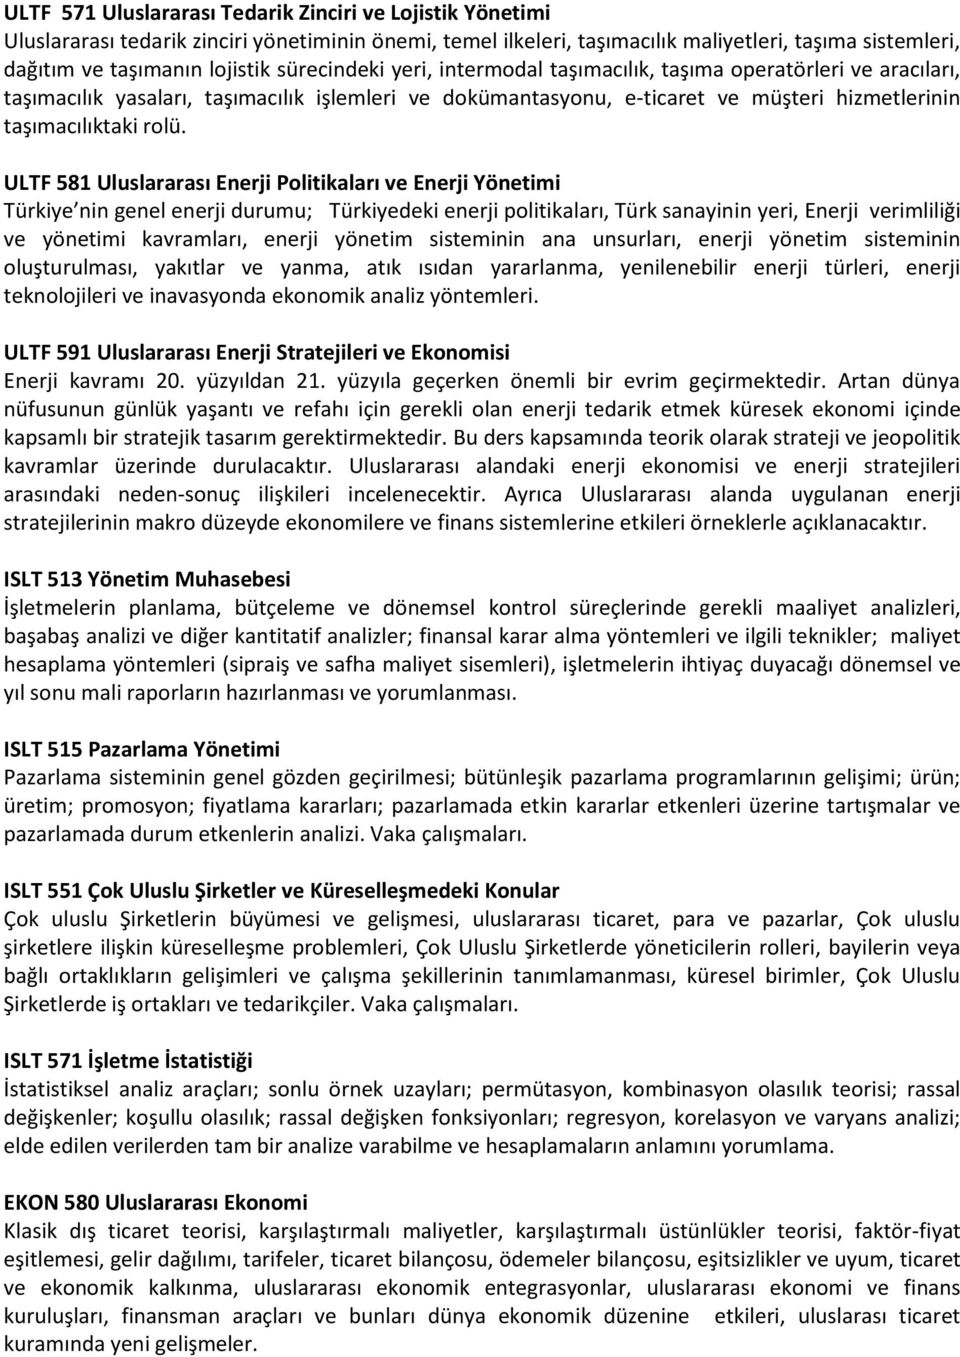 ULTF 581 Uluslararası Enerji Politikaları ve Enerji Yönetimi Türkiye nin genel enerji durumu; Türkiyedeki enerji politikaları, Türk sanayinin yeri, Enerji verimliliği ve yönetimi kavramları, enerji